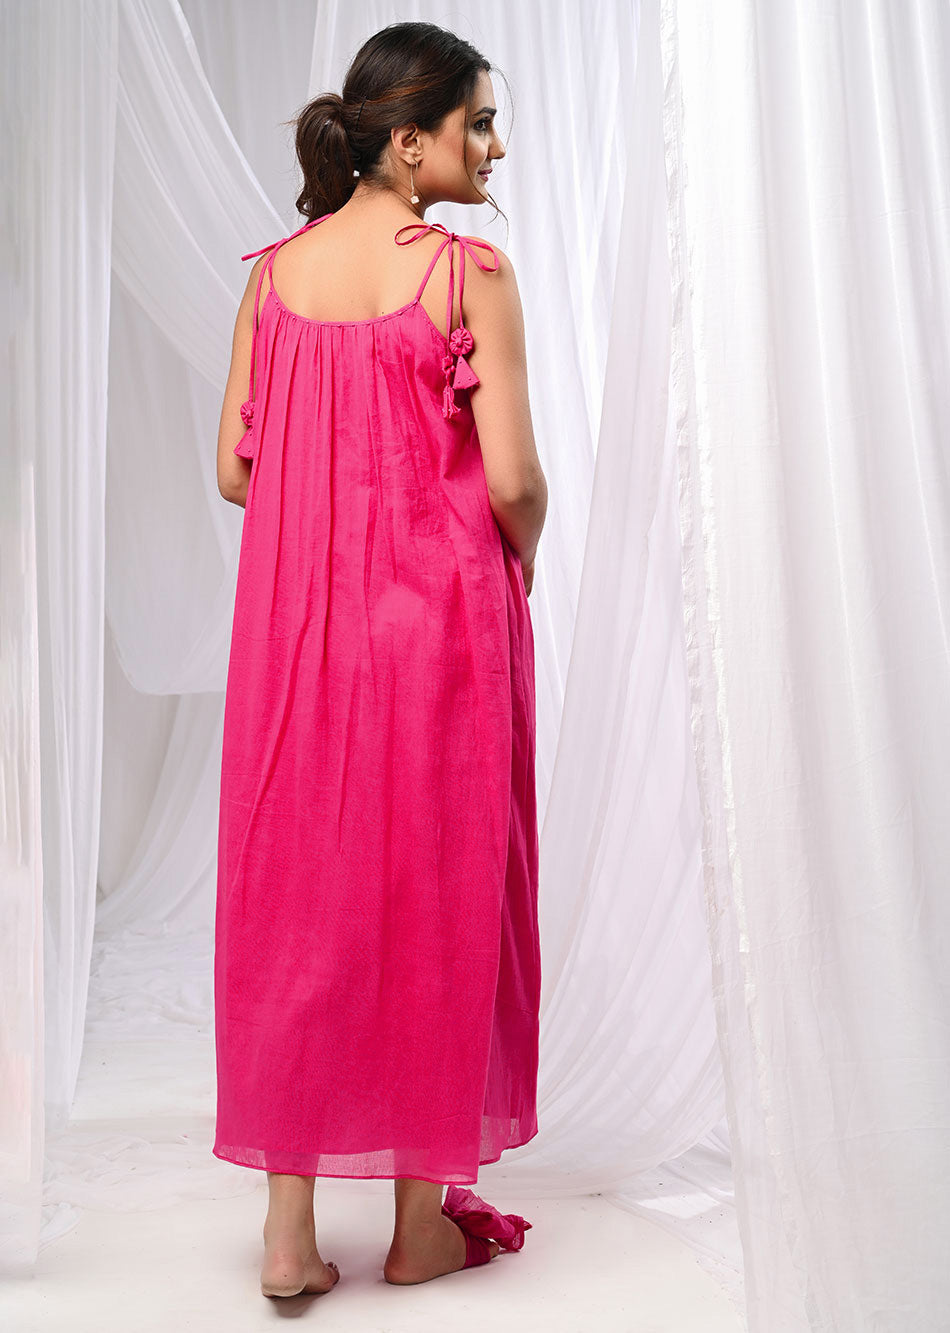 Rani Pink Halter Neck Anarkali Suit Set